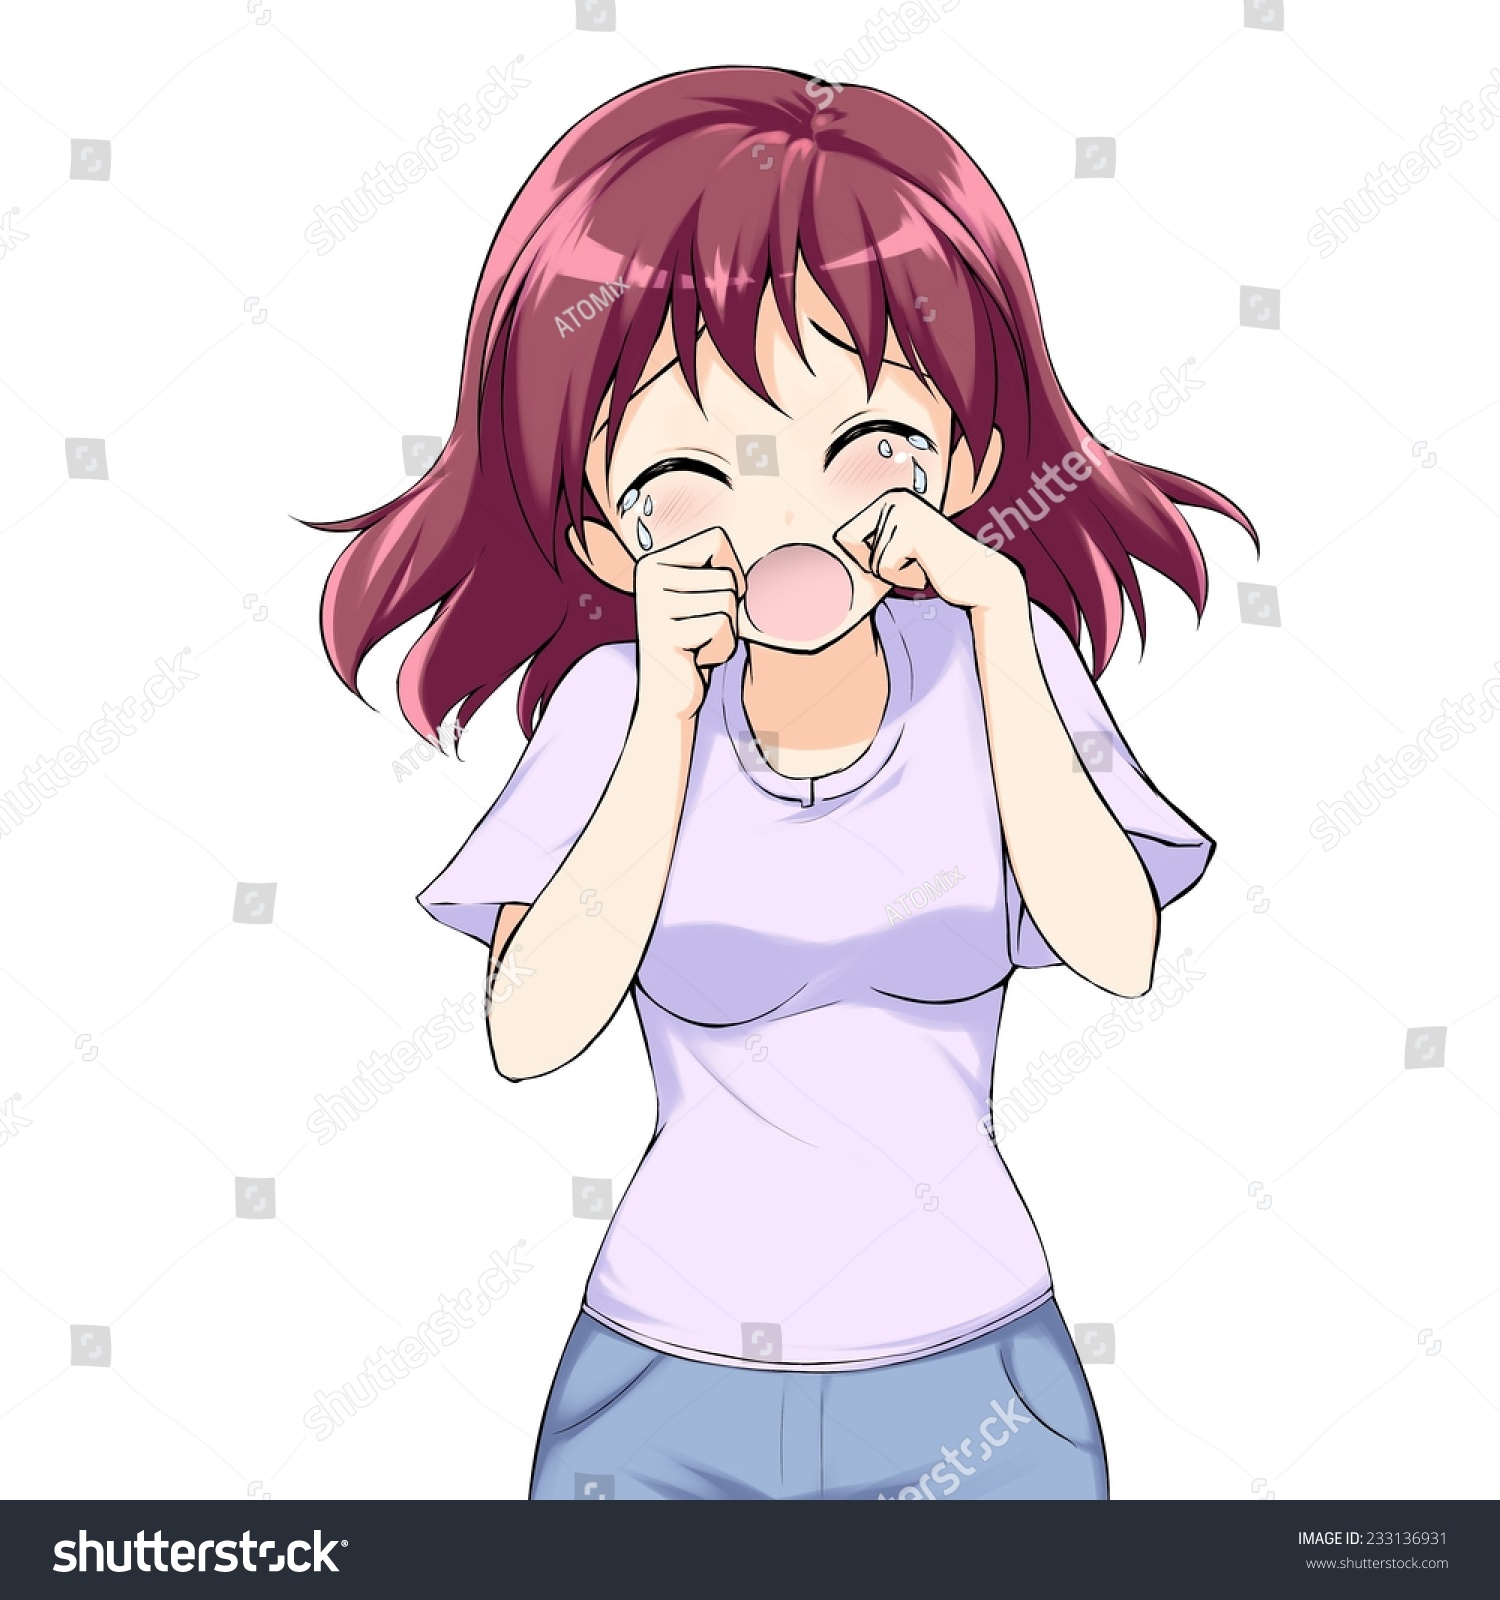 Anime Girl Screaming